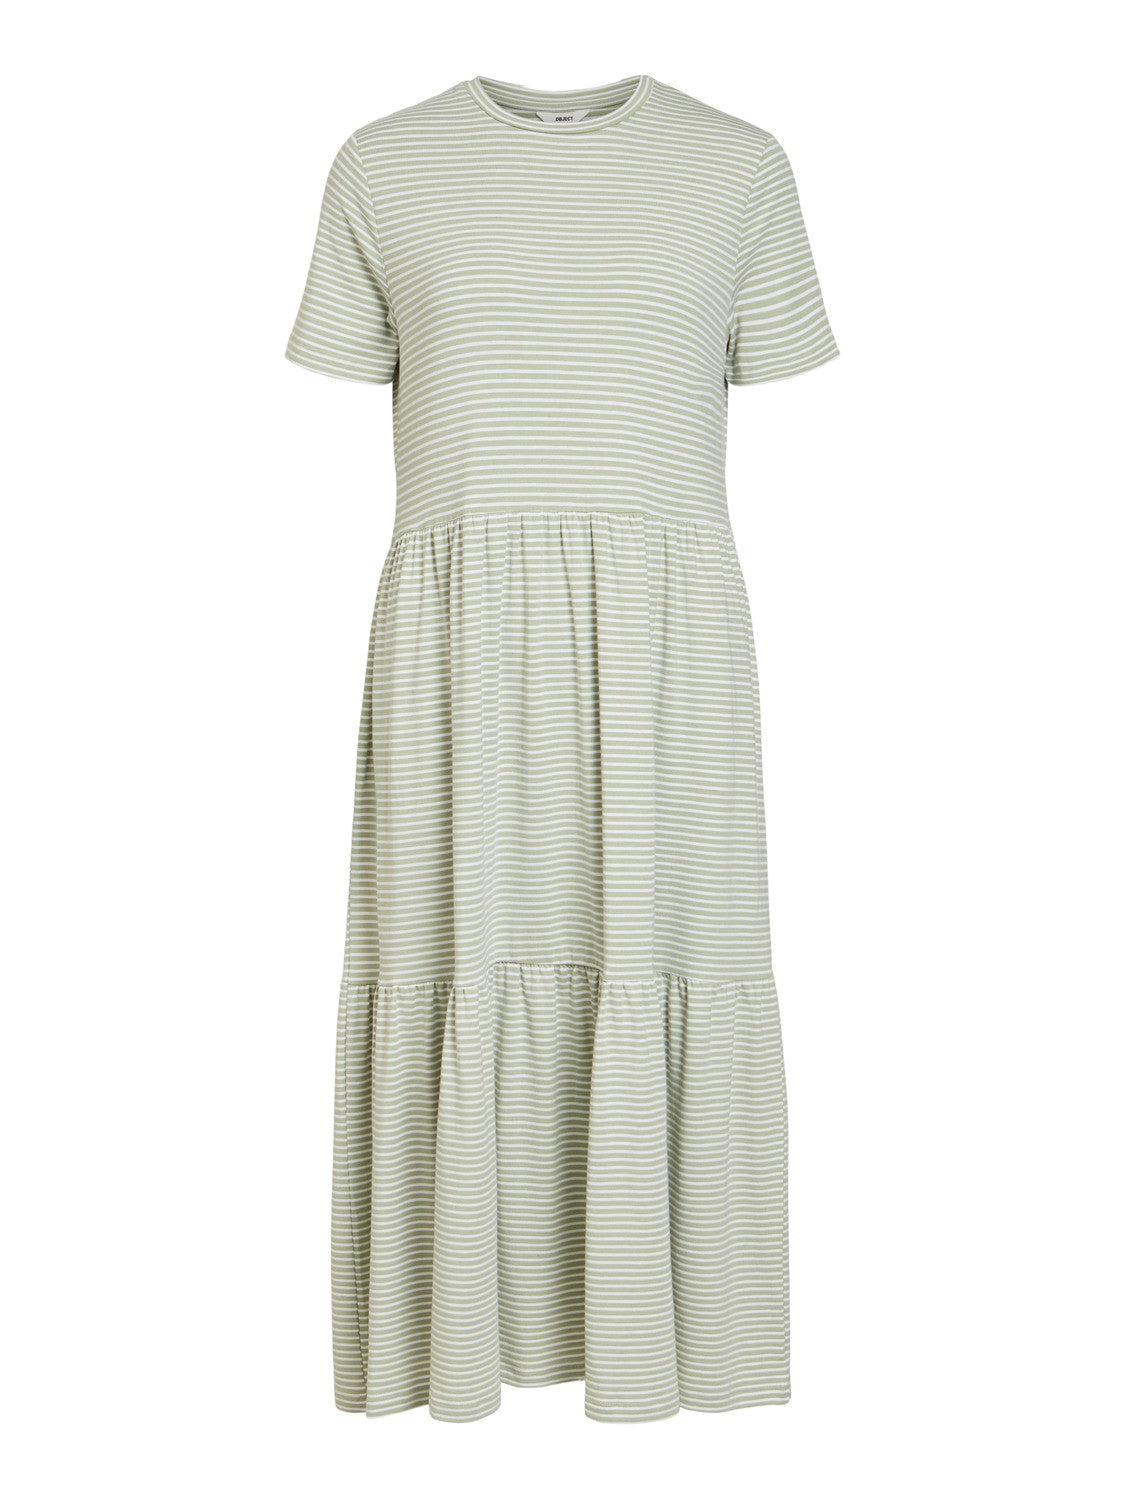 Stephanie Smock Dress (Seagrass/White)